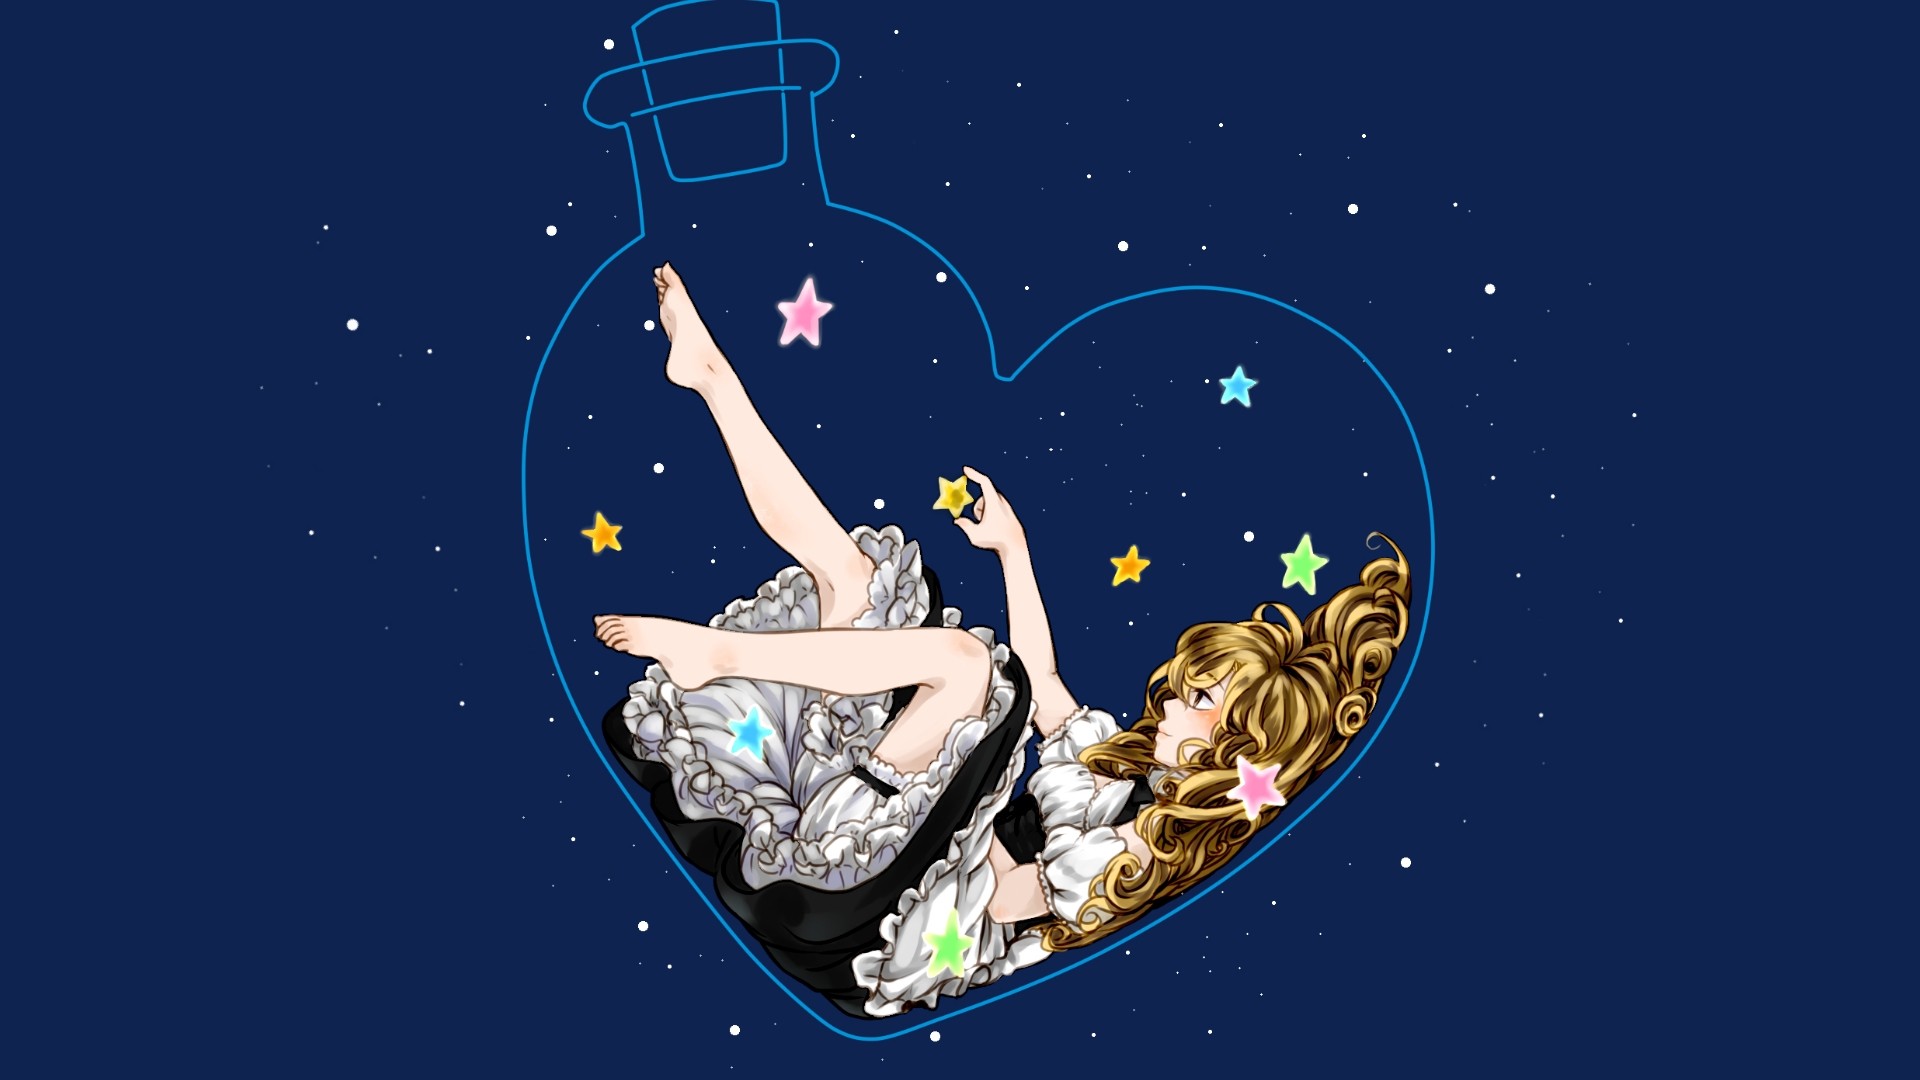 Anime 1920x1080 Kirisame Marisa Touhou barefoot feet legs stars Dreamworld bottles blonde anime anime girls sky dress fantasy art fantasy girl